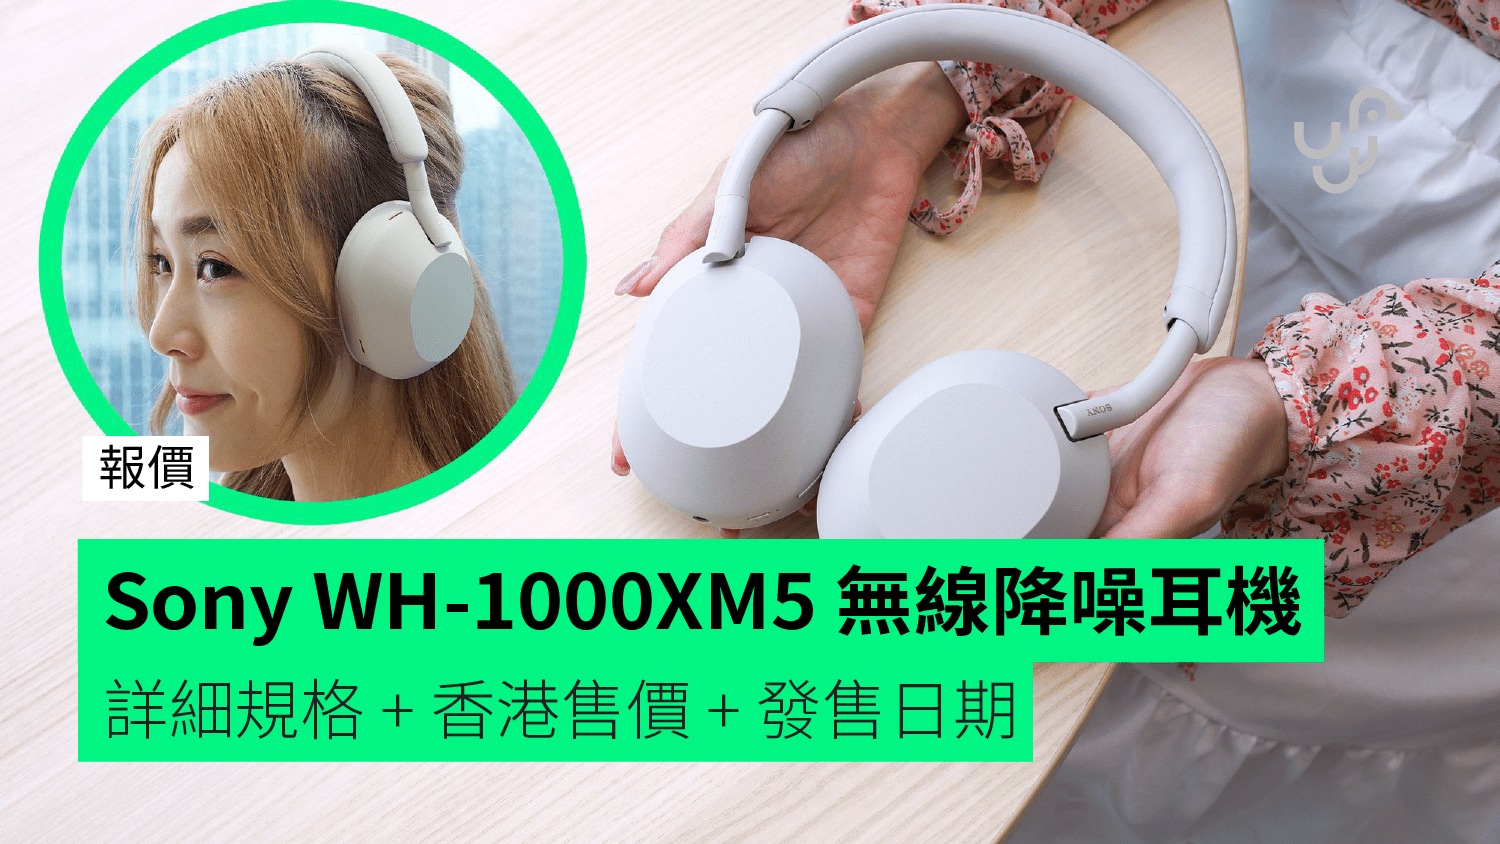 【報價】Sony WH-1000XM5 無線降噪耳機 詳細規格 + 香港售價 + 發售日期 - 香港 unwire.hk